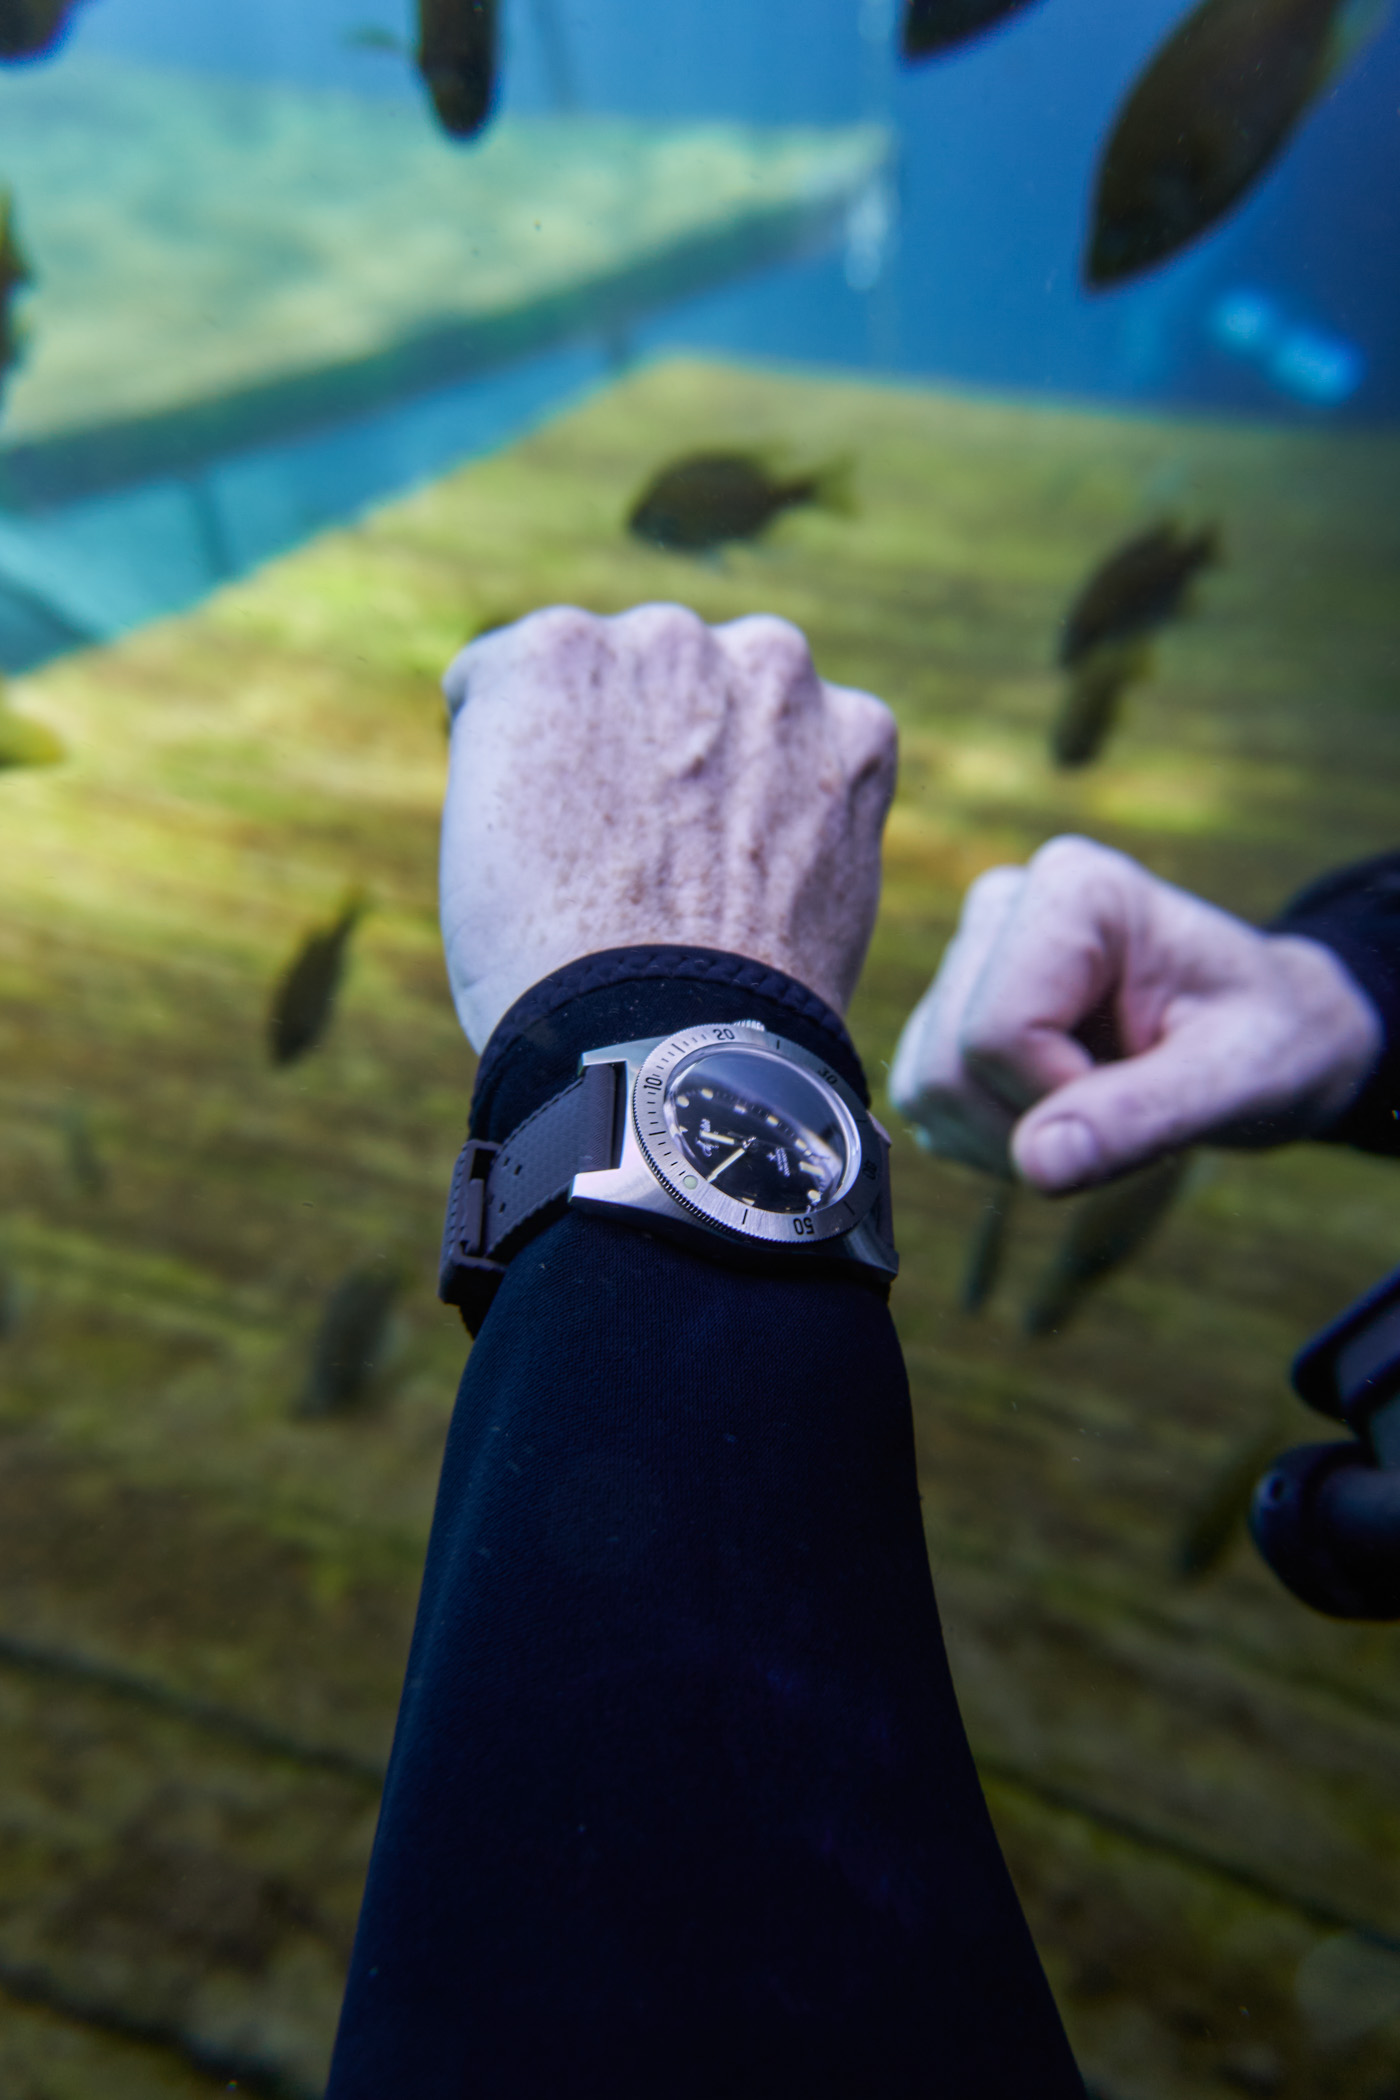 Aquastar Model 60 dive watch - underwater diving review